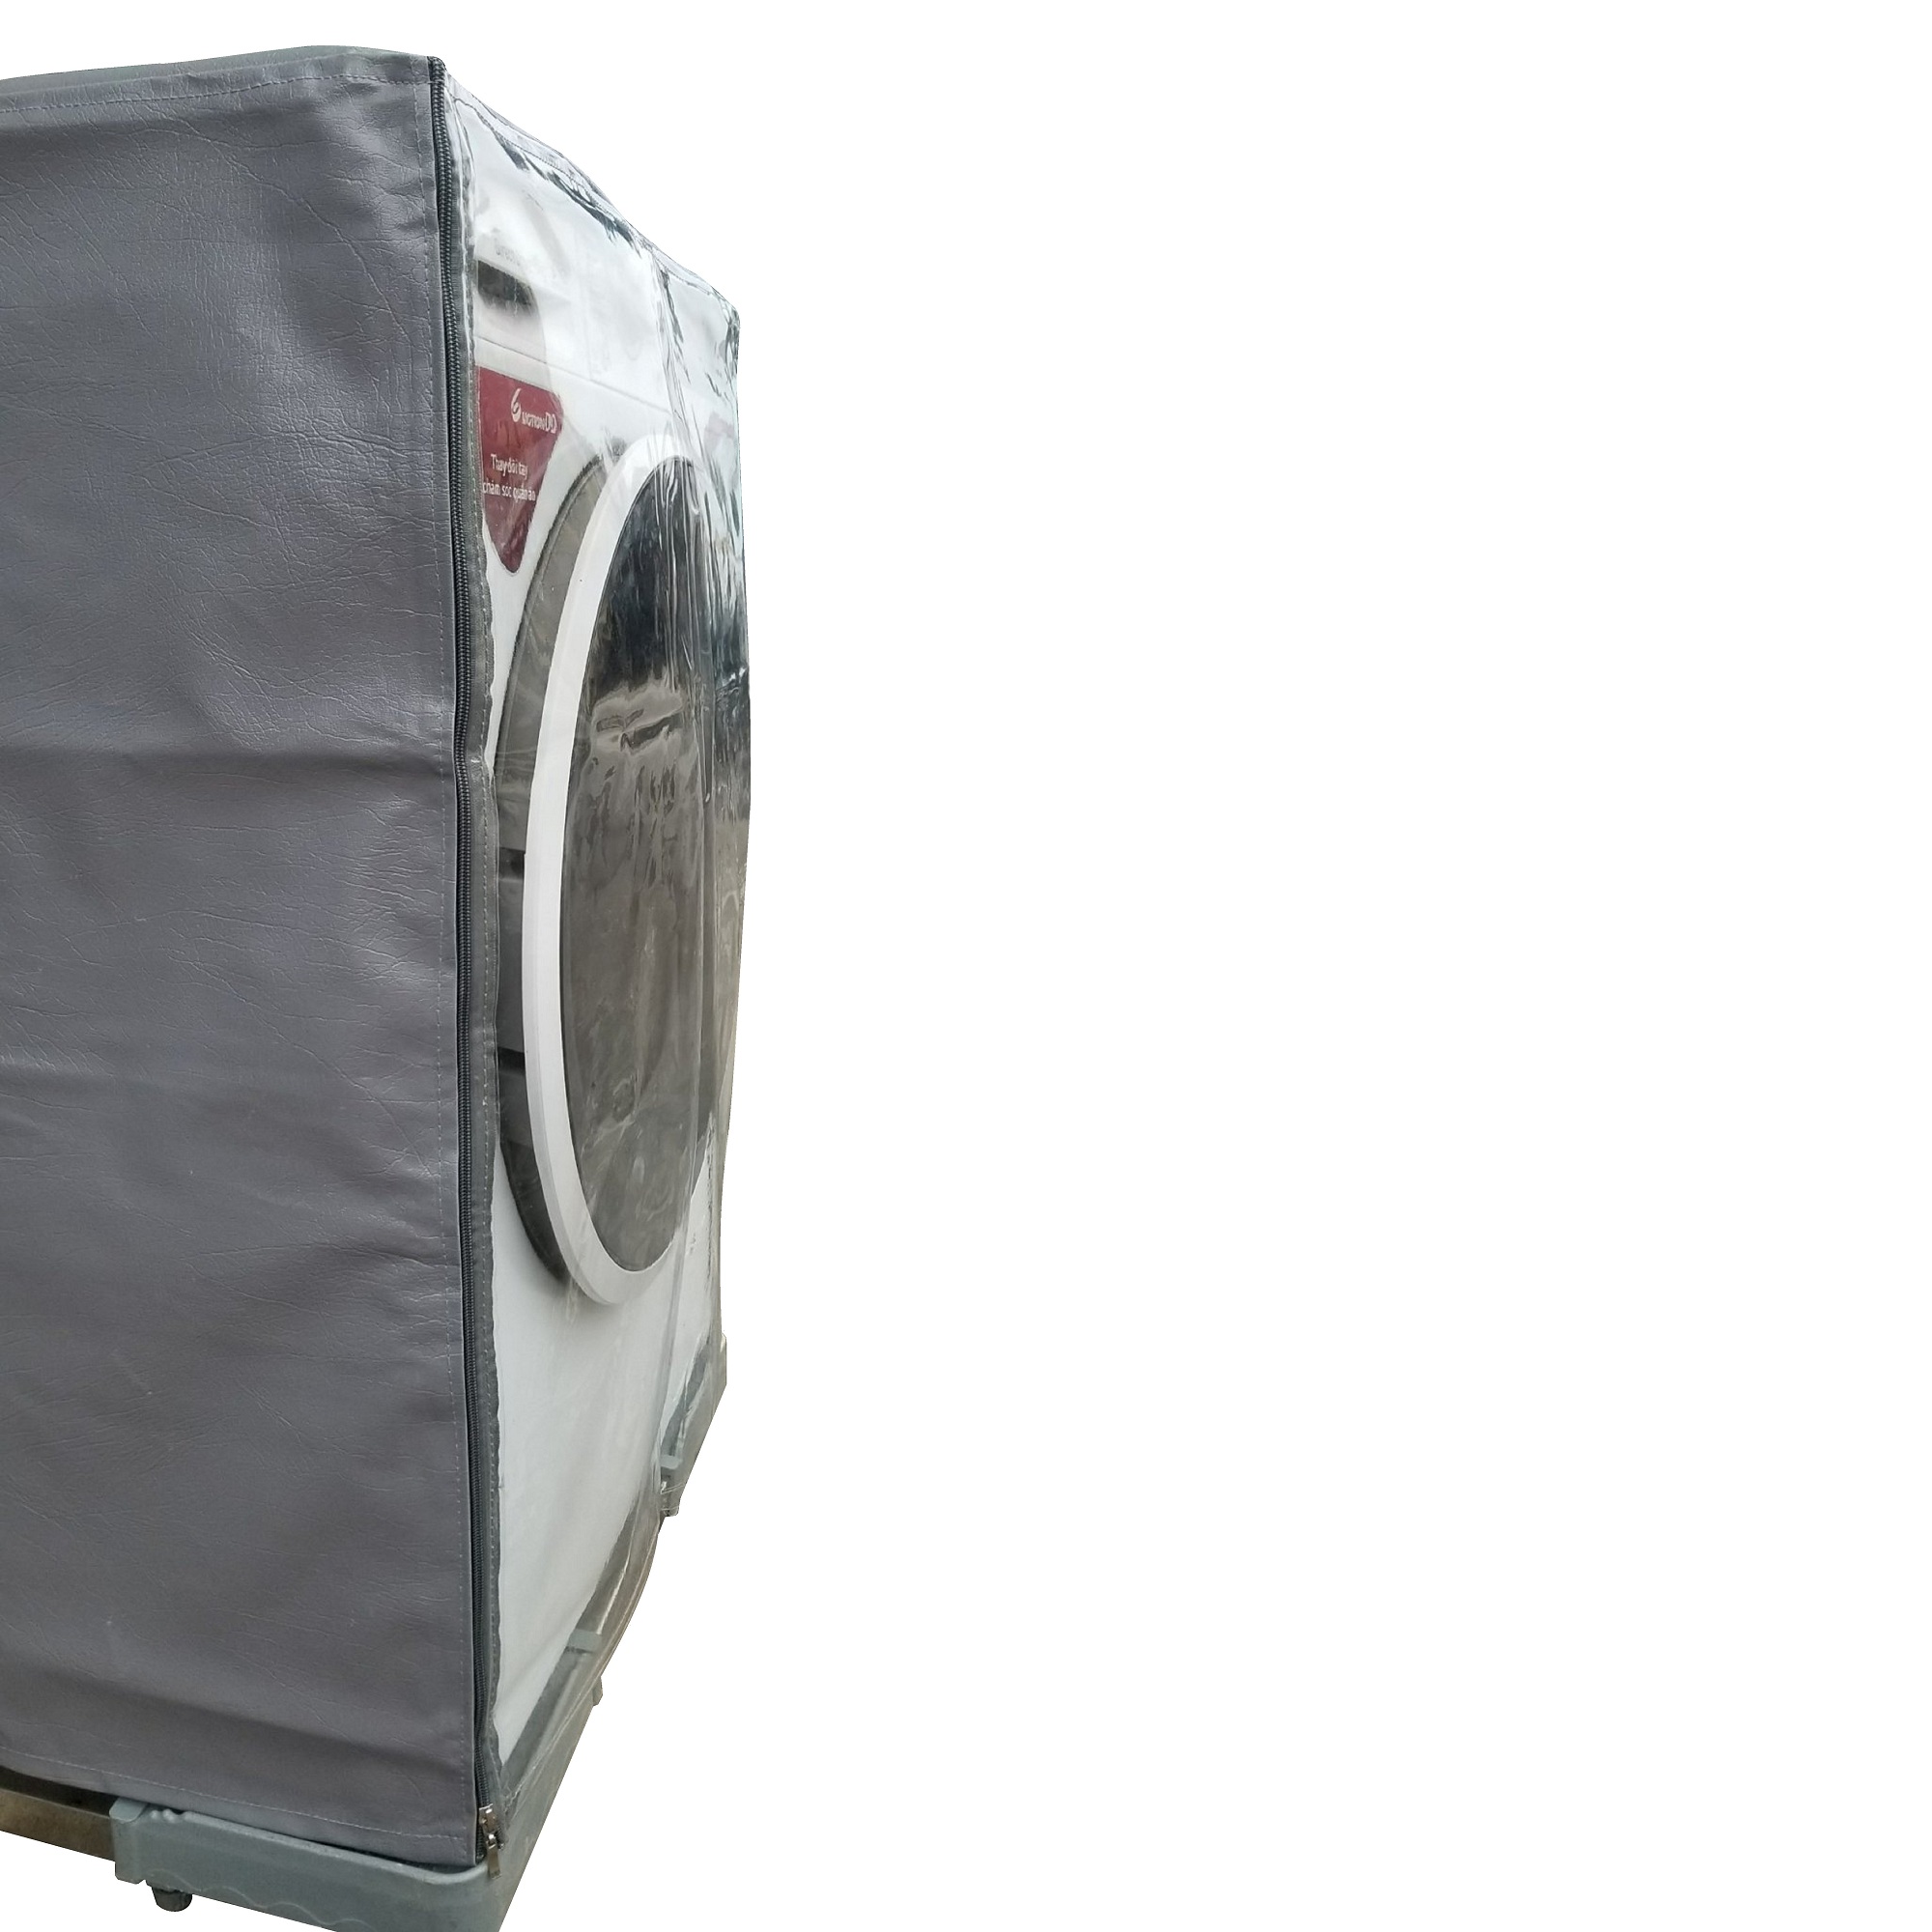 Vỏ bọc máy giặt máy sấy cửa ngang chất liệu da cao cấp